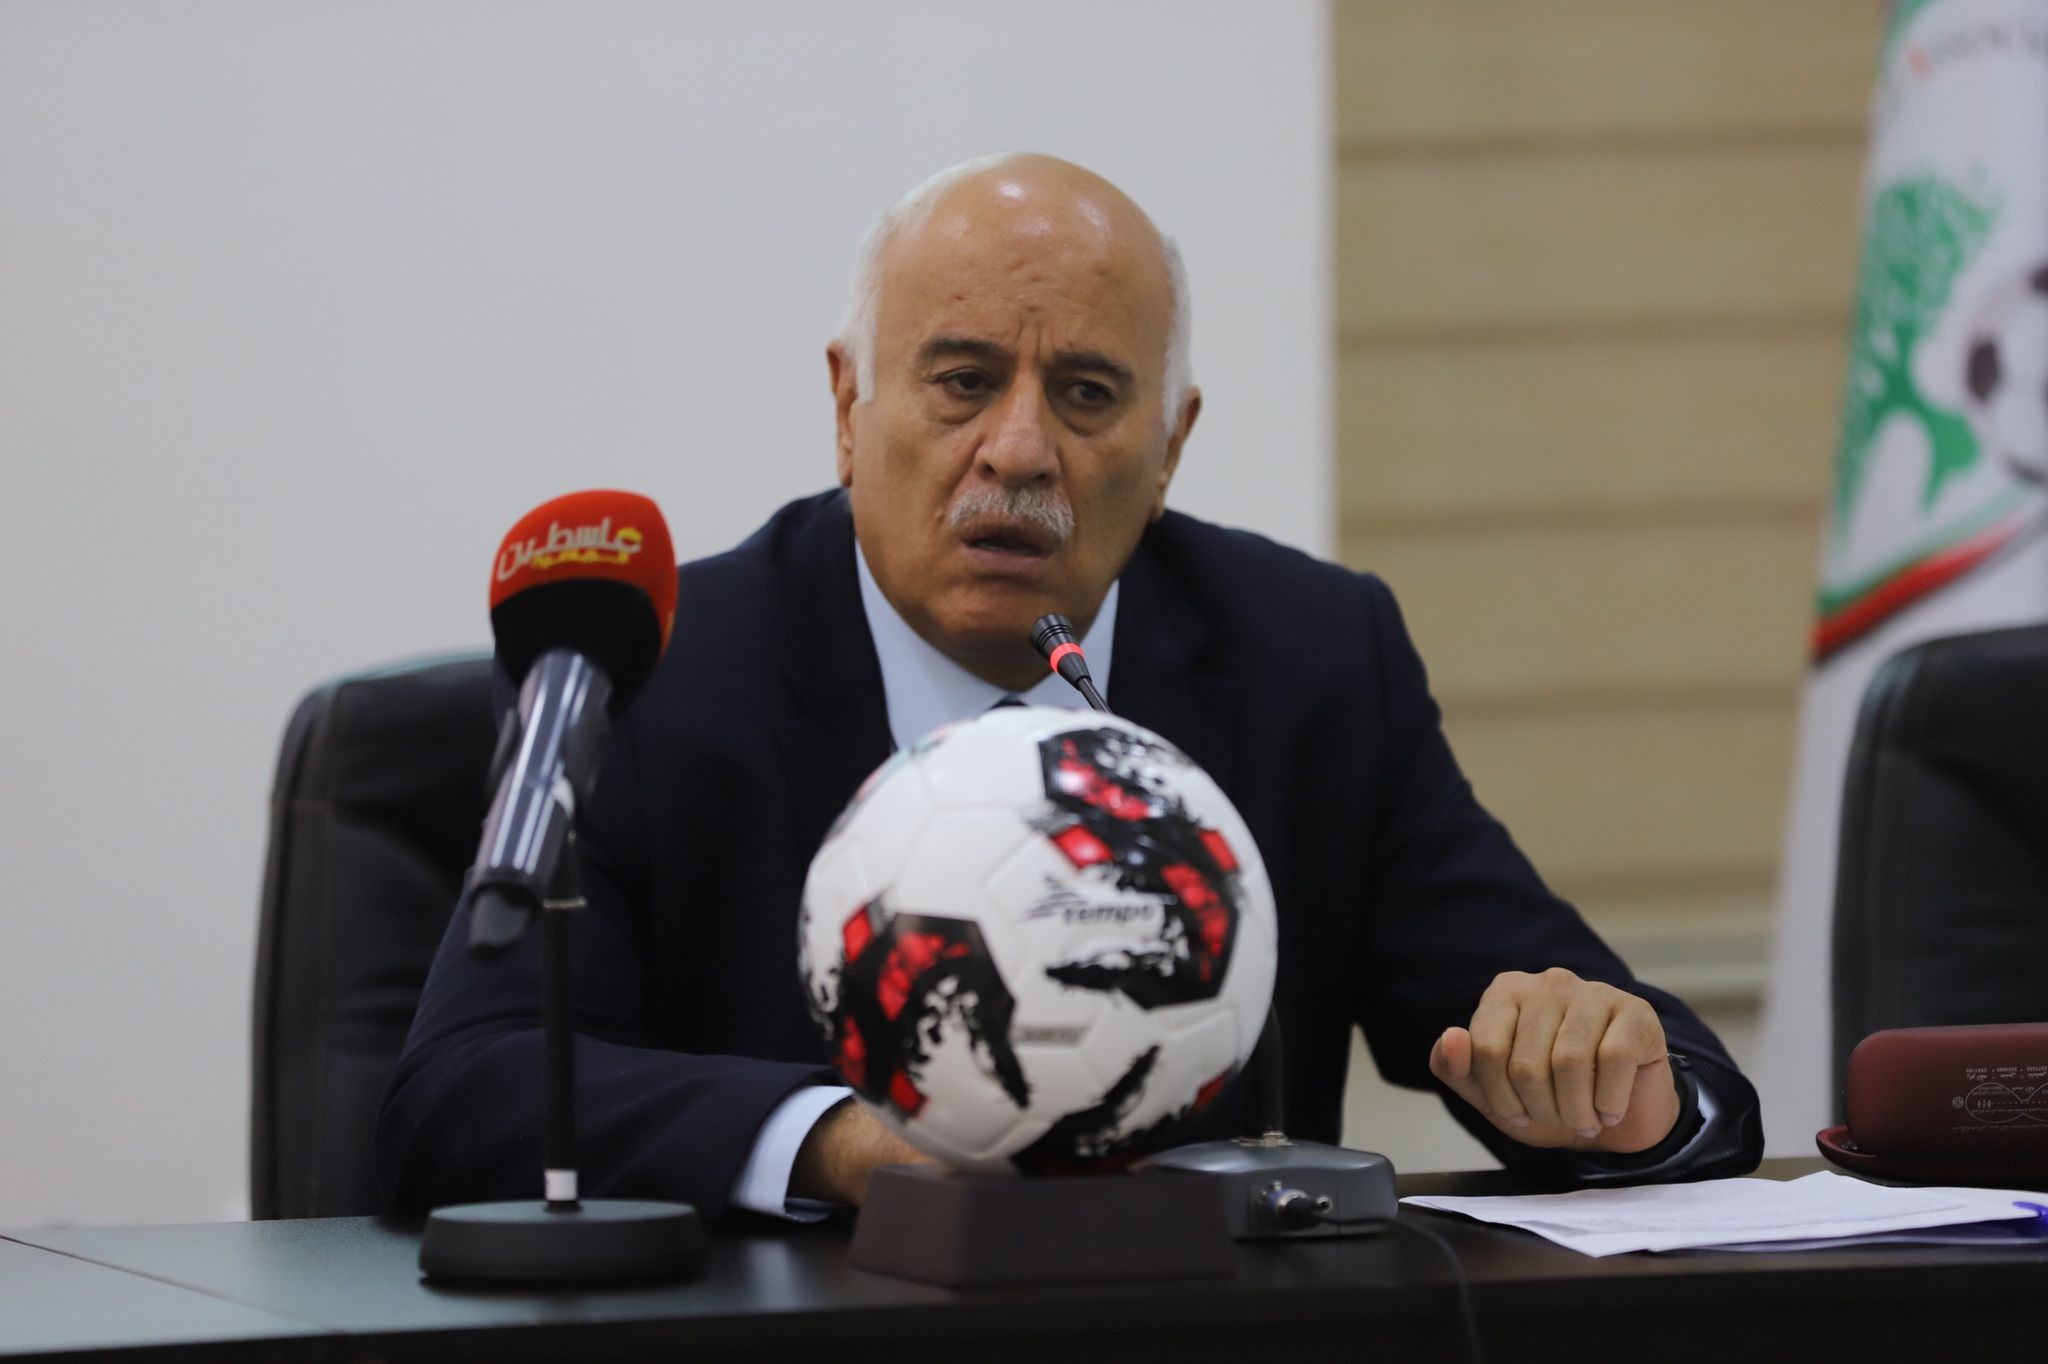 خلال سحب قرعة كأس أبو عمار: الرجوب يؤكد الالتزام بدعم الأندية ماليا ويدعوها للانتباه إلى "العقود الخيالية"